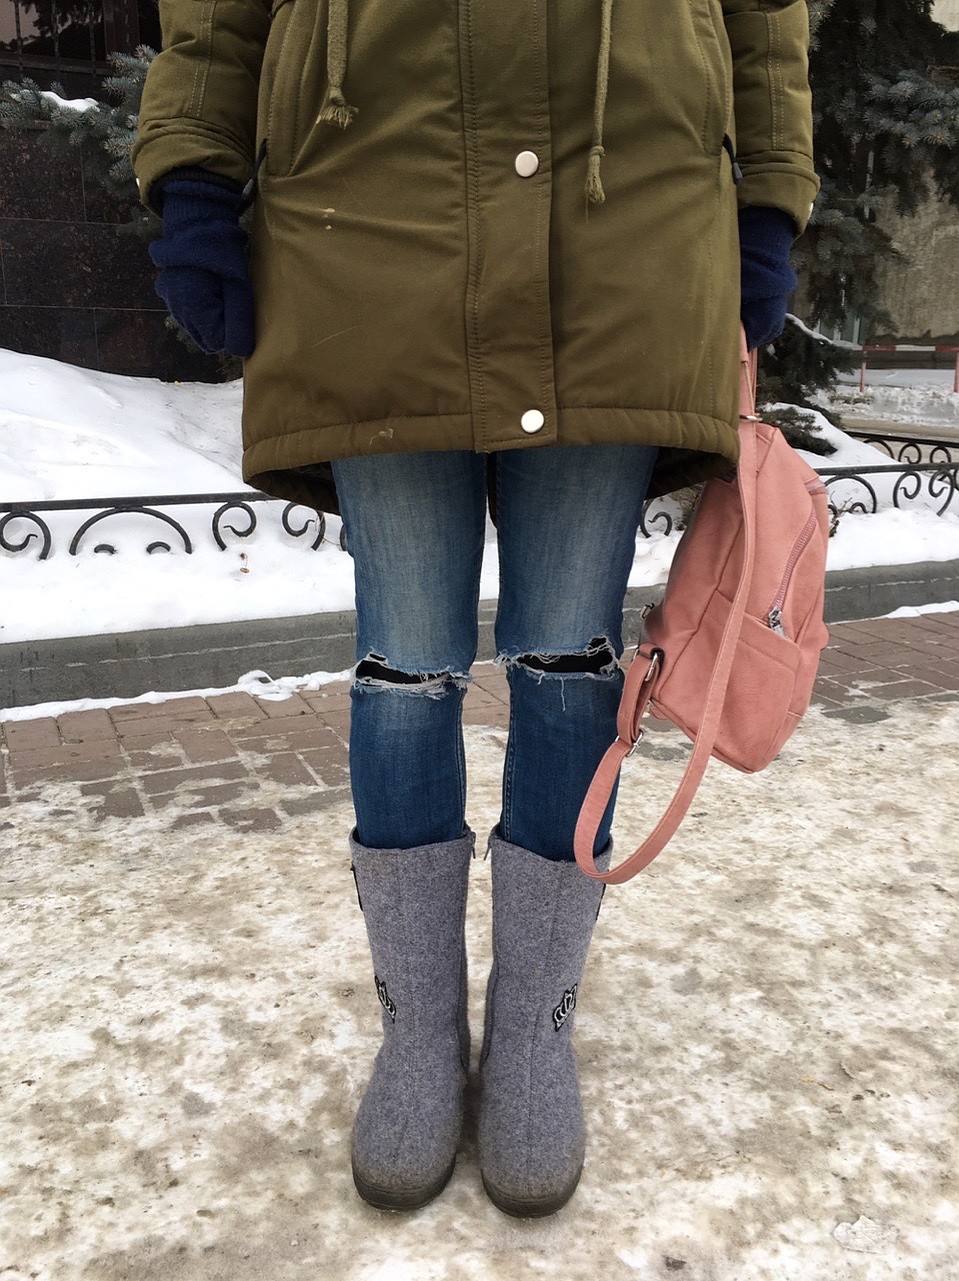 Рваные джинсы зимой - точно нет. Фото: Екатерина АНДРЕЕВА